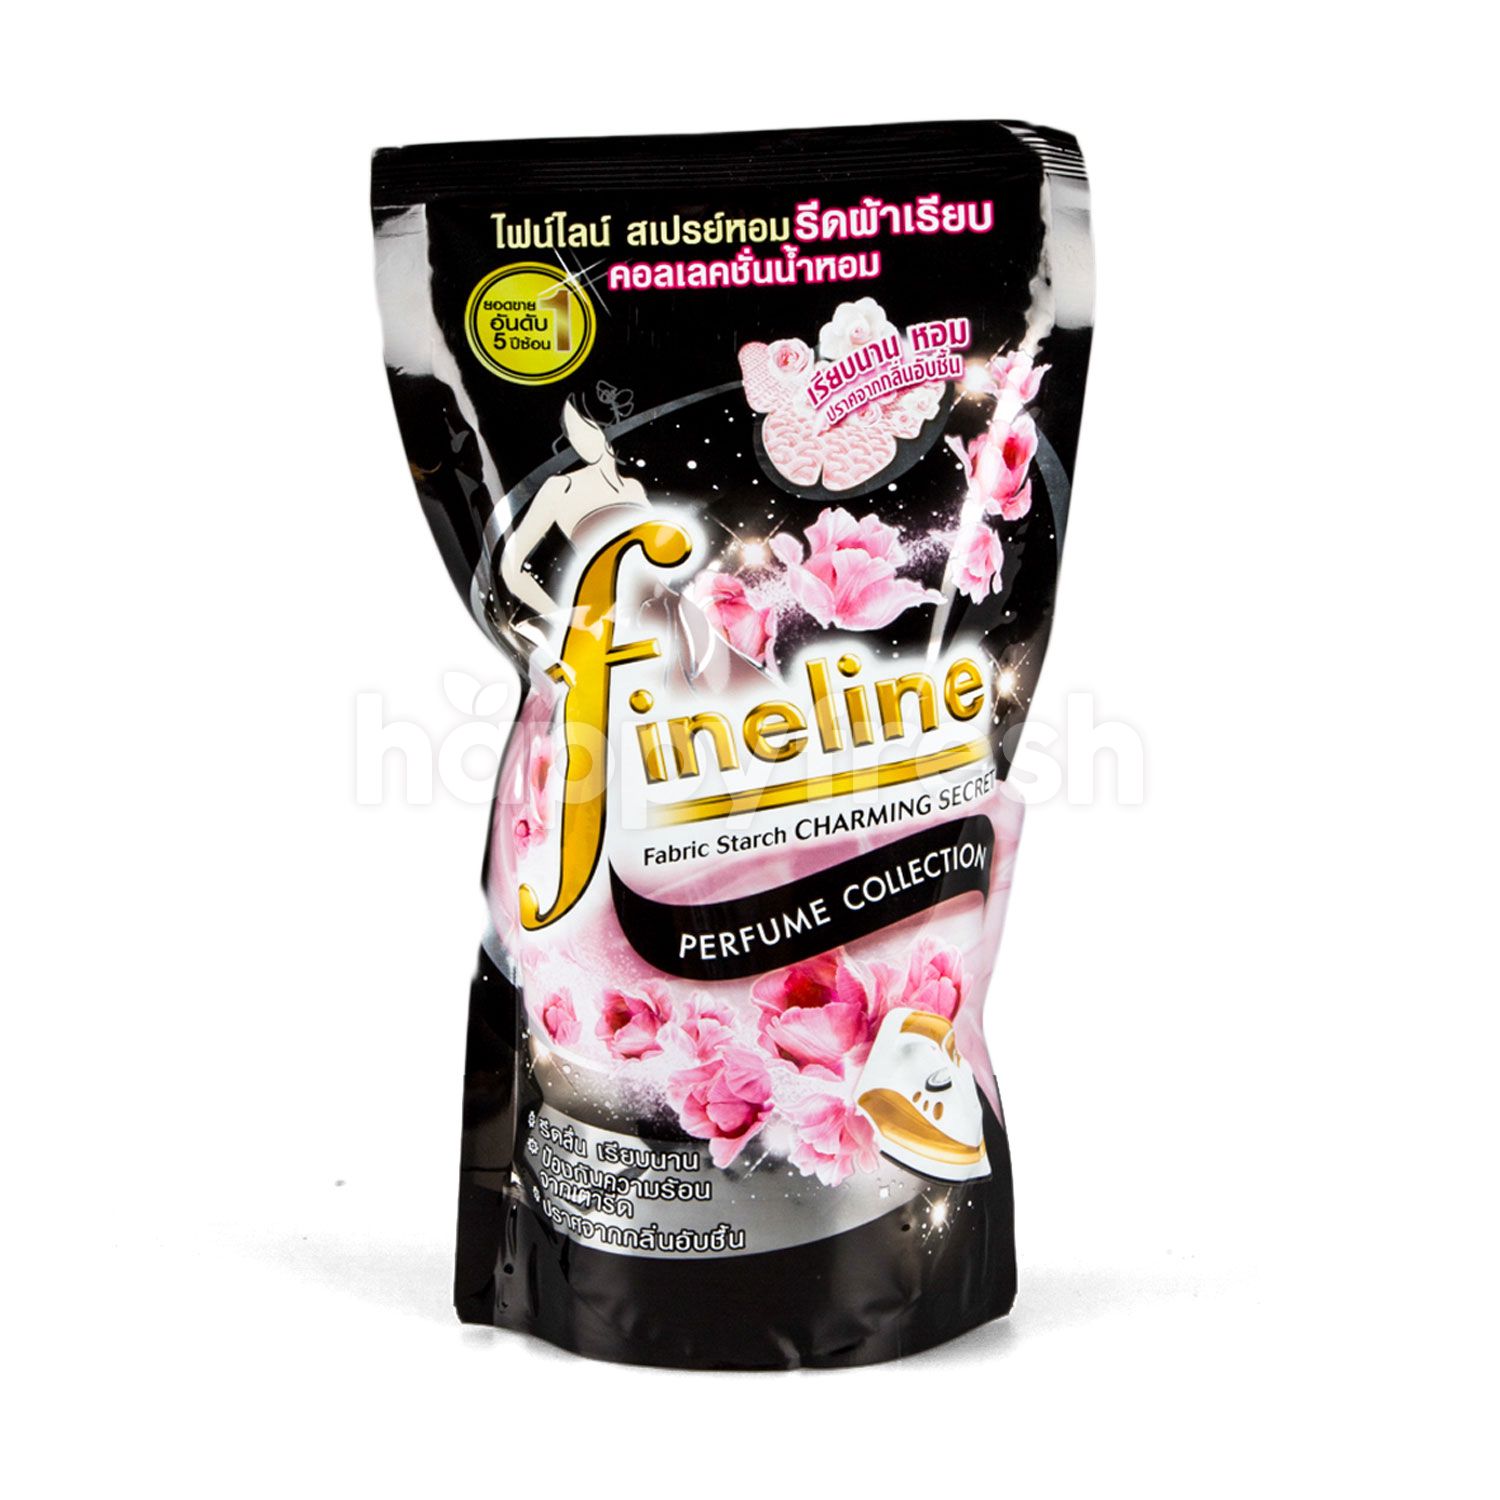 ซื้อ Fineline Fabric Starch Perfume Collection Spray 450 ml Online จาก  Lotus's - HappyFresh